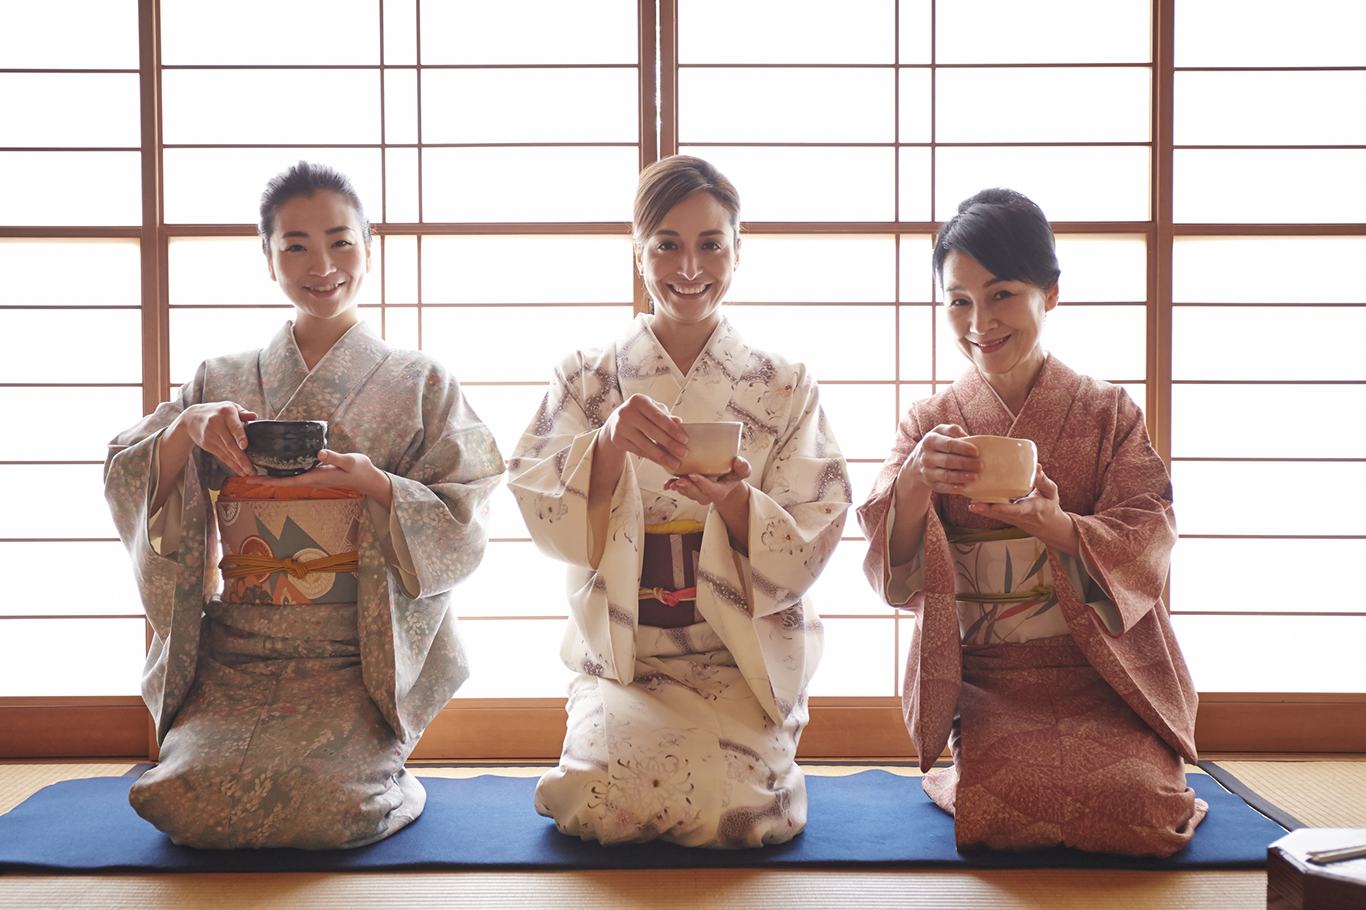 ประสบการณ์พิธีชงชาสวมชุดกิโมโนในโอซาก้า